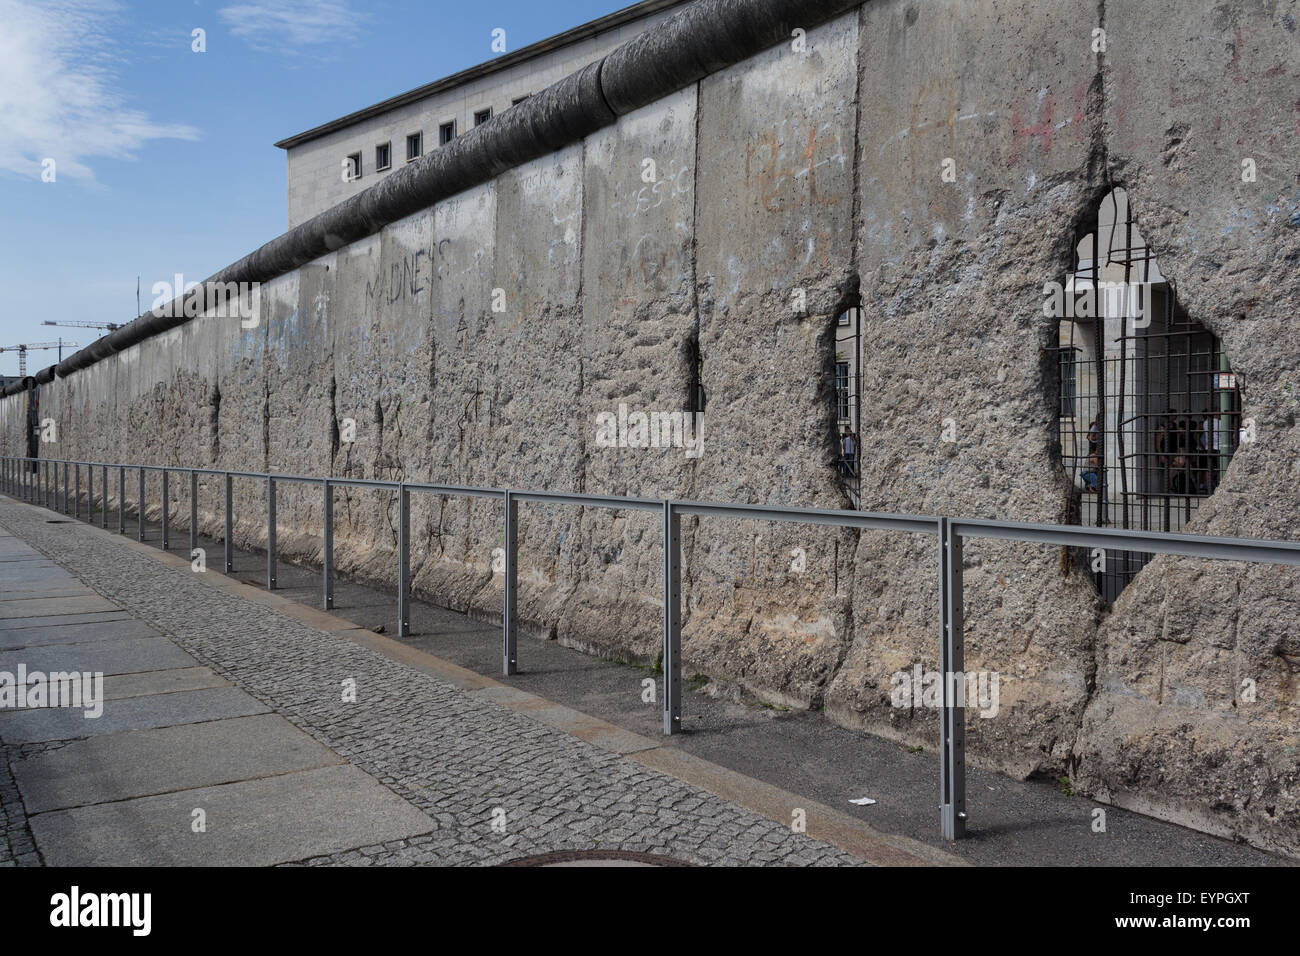 berlin wall, berlin germany Stock Photo